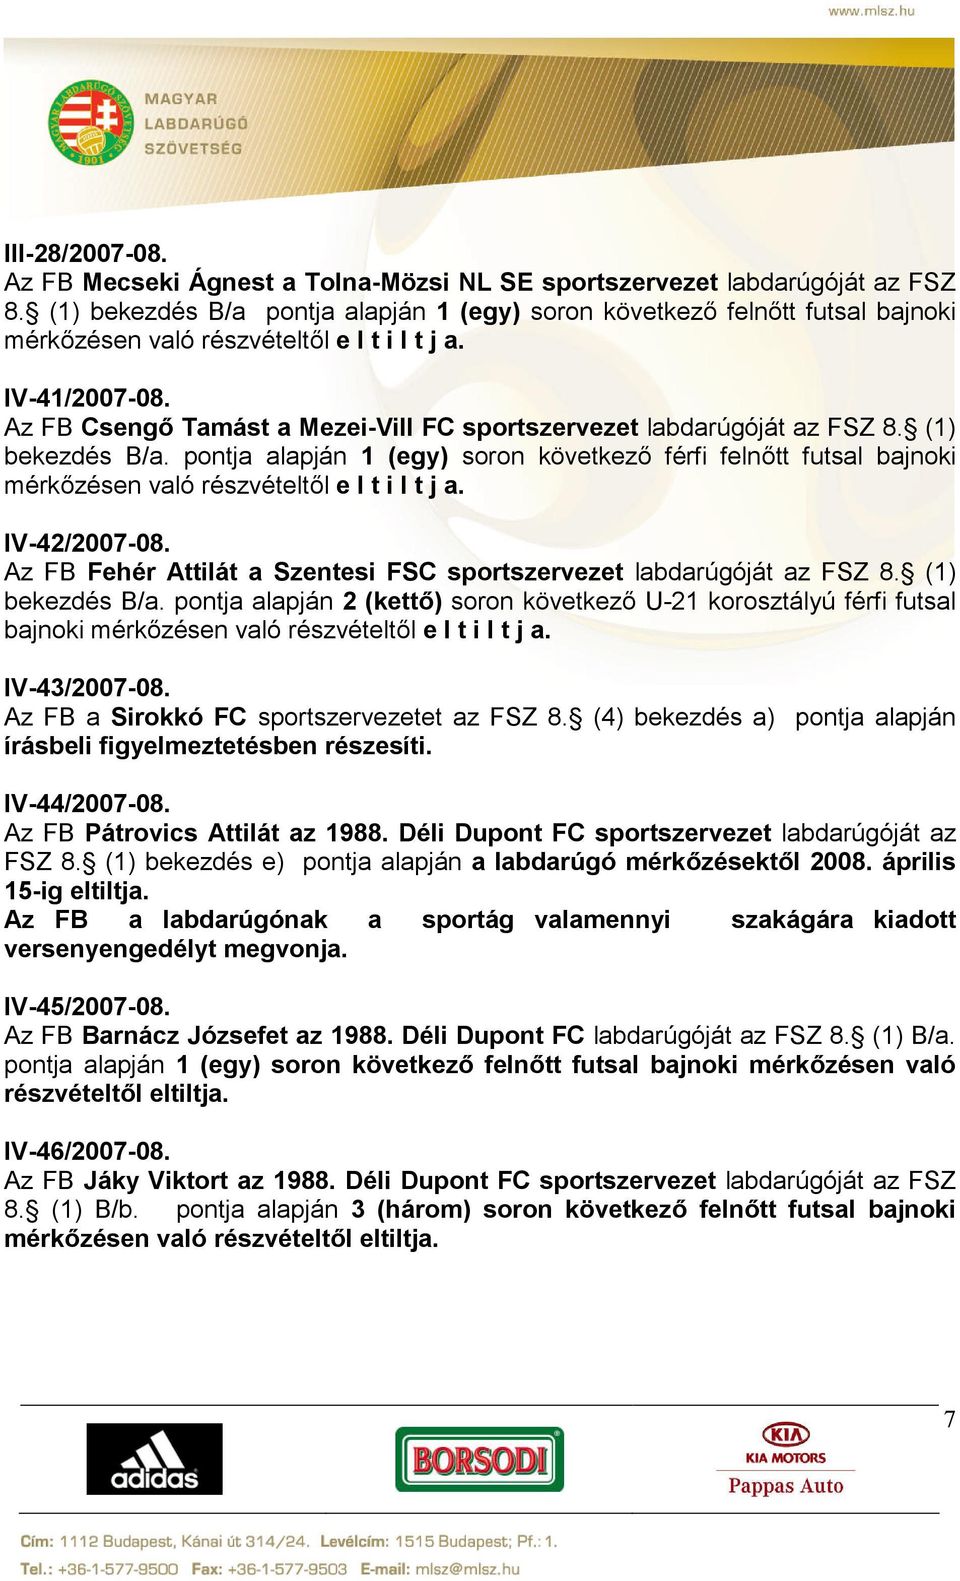 Az FB Fehér Attilát a Szentesi FSC sportszervezet labdarúgóját az FSZ 8. (1) bekezdés B/a. pontja alapján 2 (kettő) soron következő U-21 korosztályú férfi futsal bajnoki IV-43/2007-08.